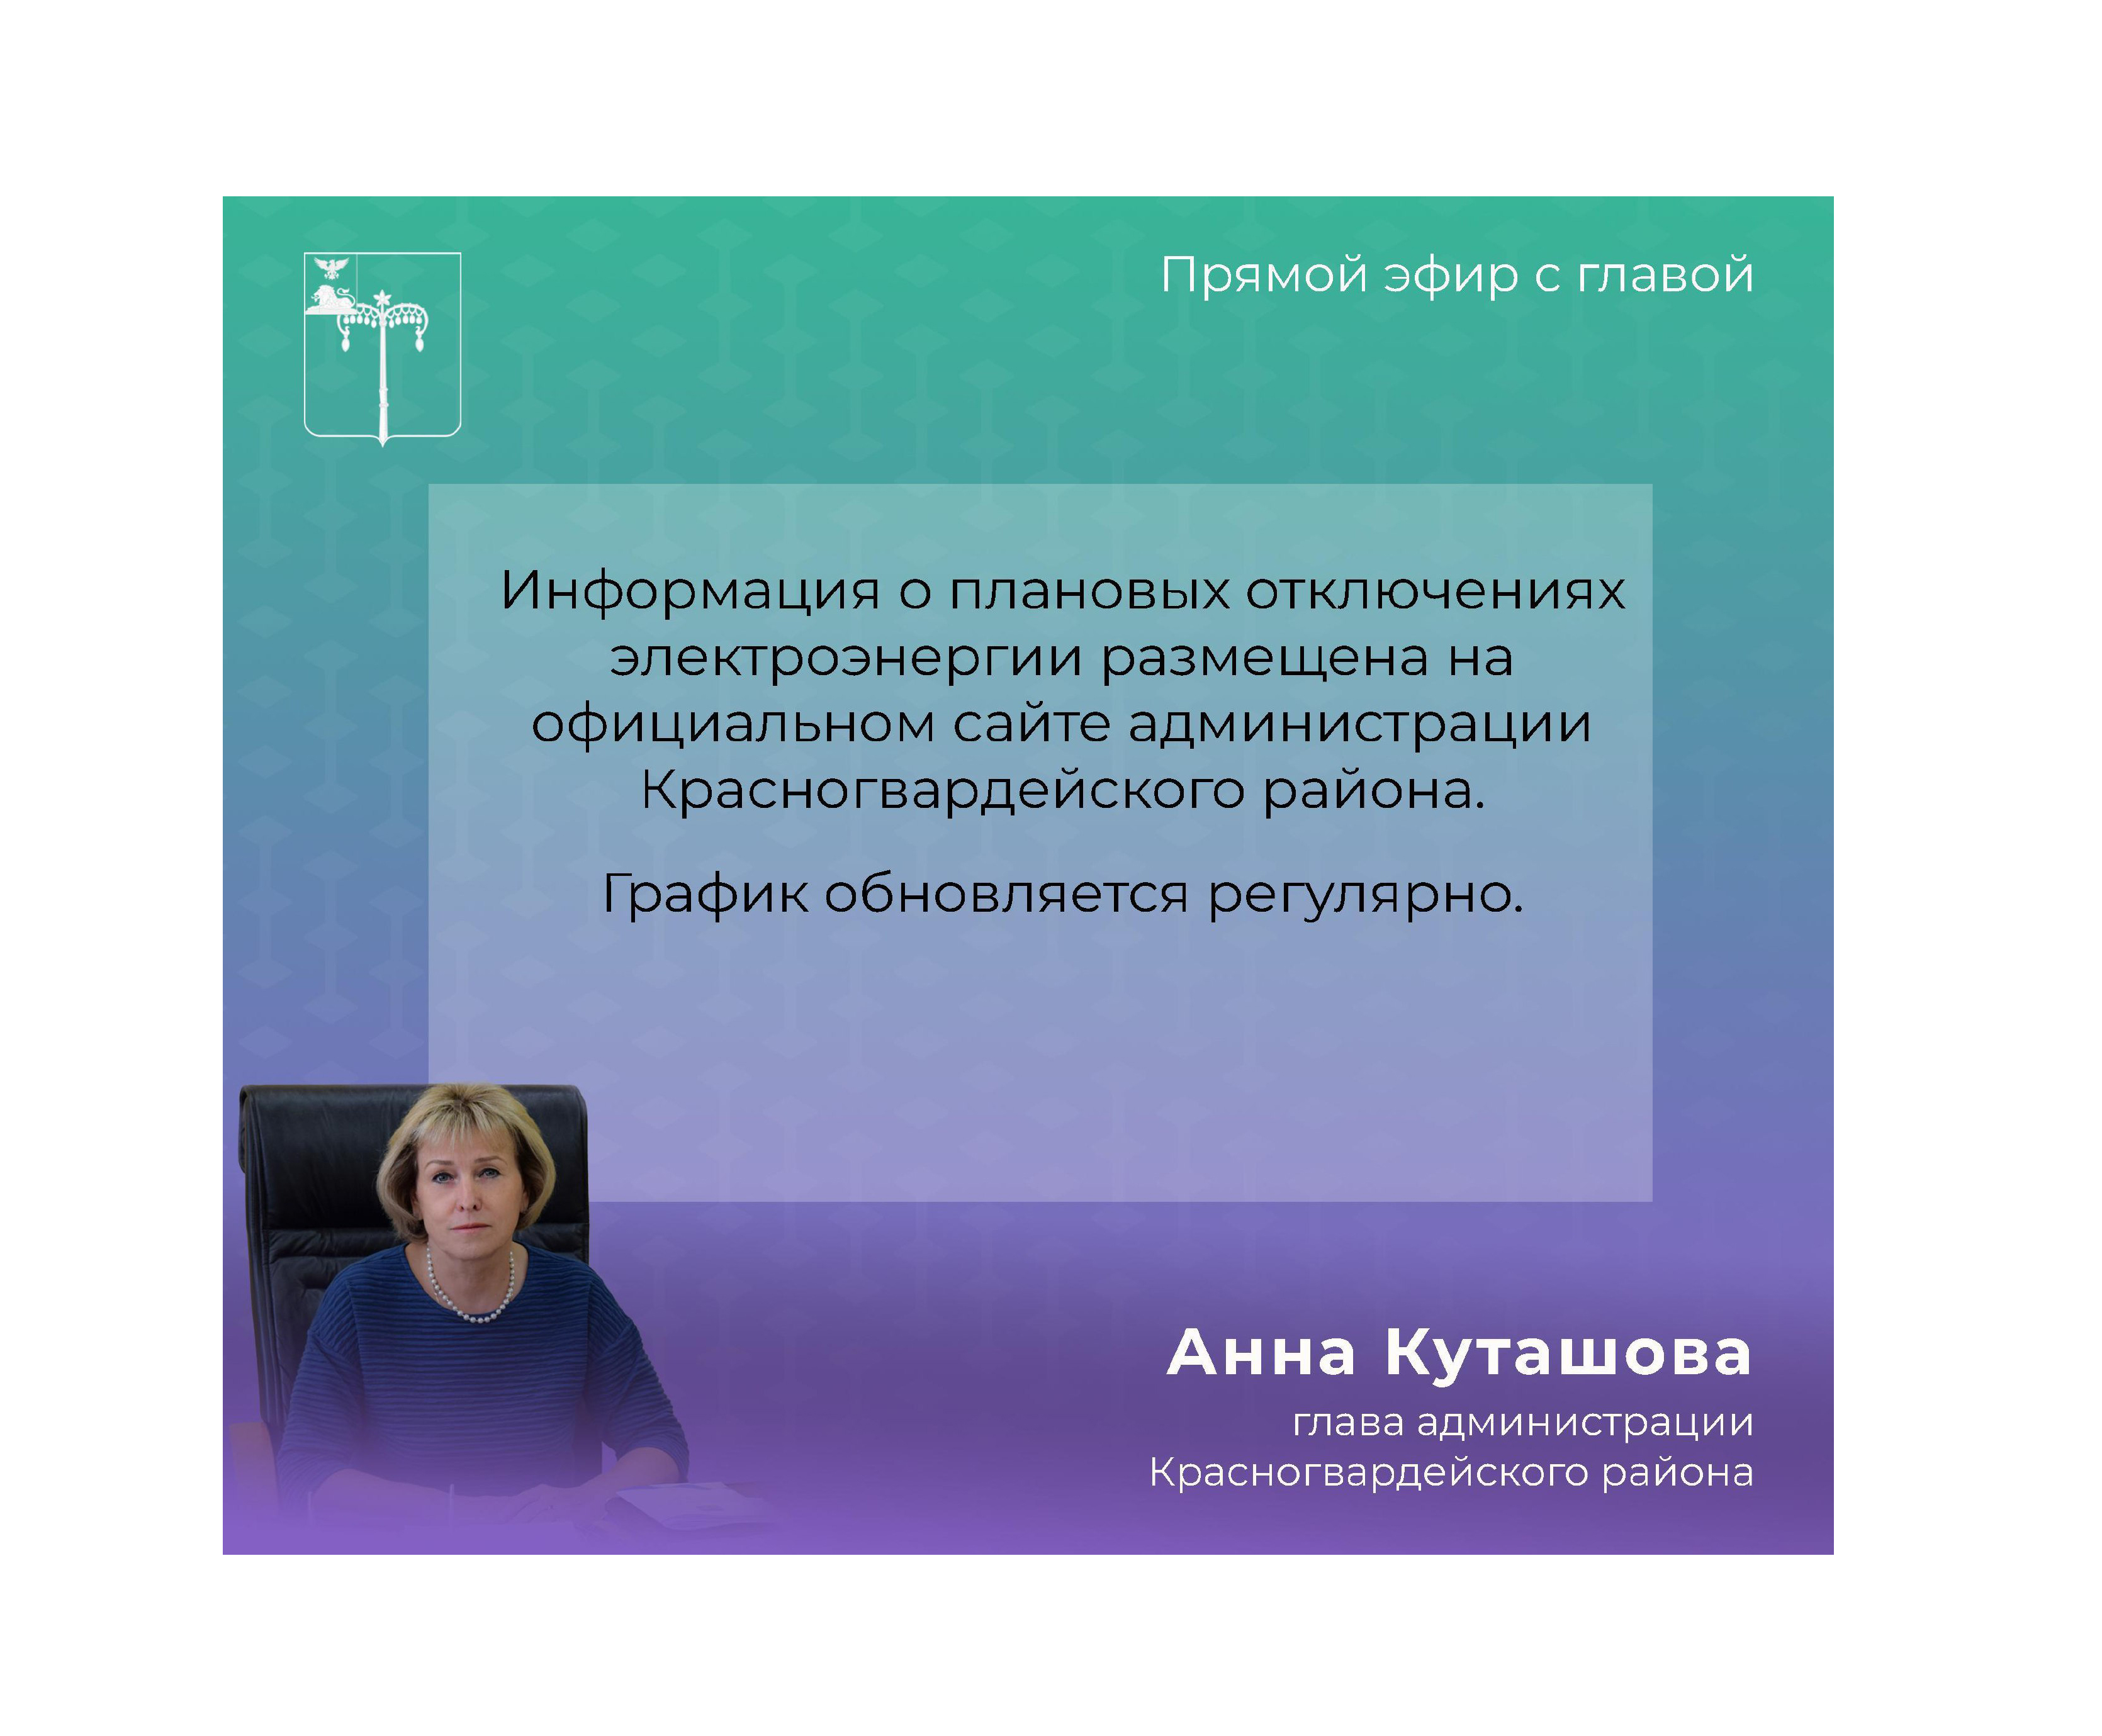 В прямом эфире глава администрации Анна Куташова ответила на вопрос об отключении электроэнергии